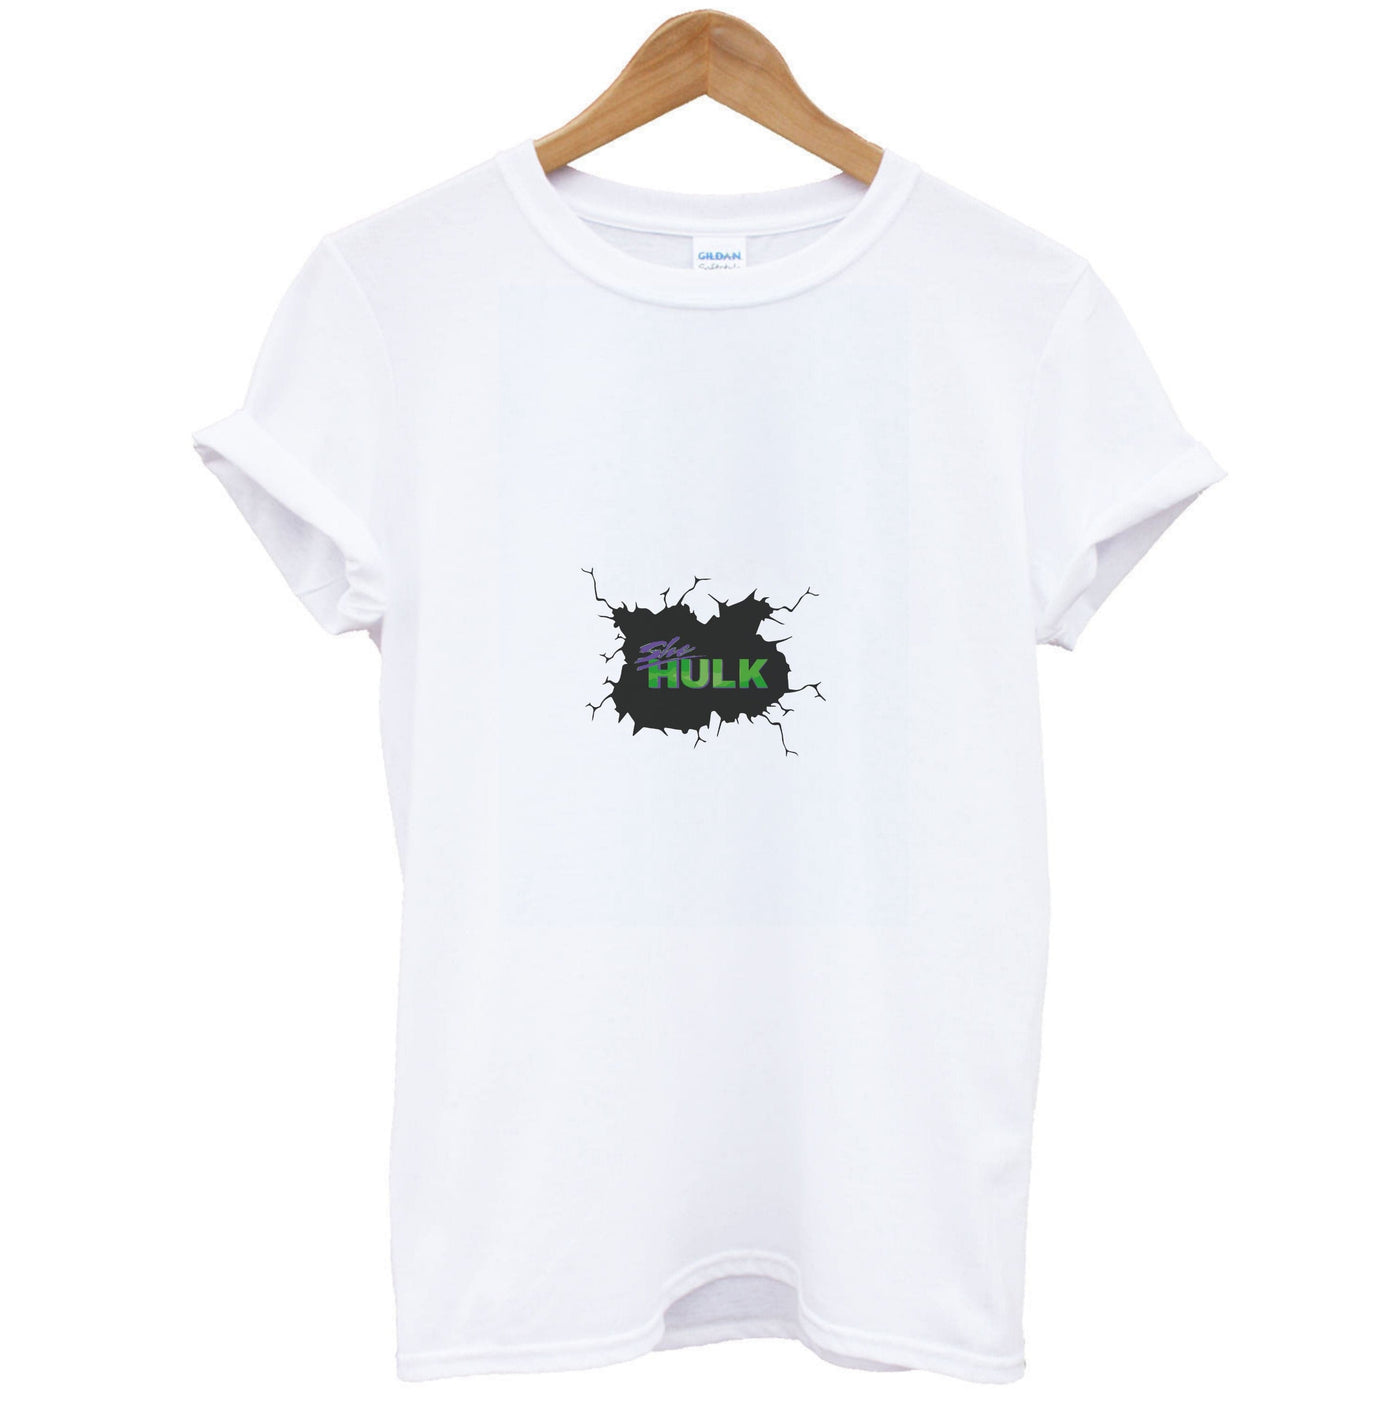 Smash - She Hulk T-Shirt